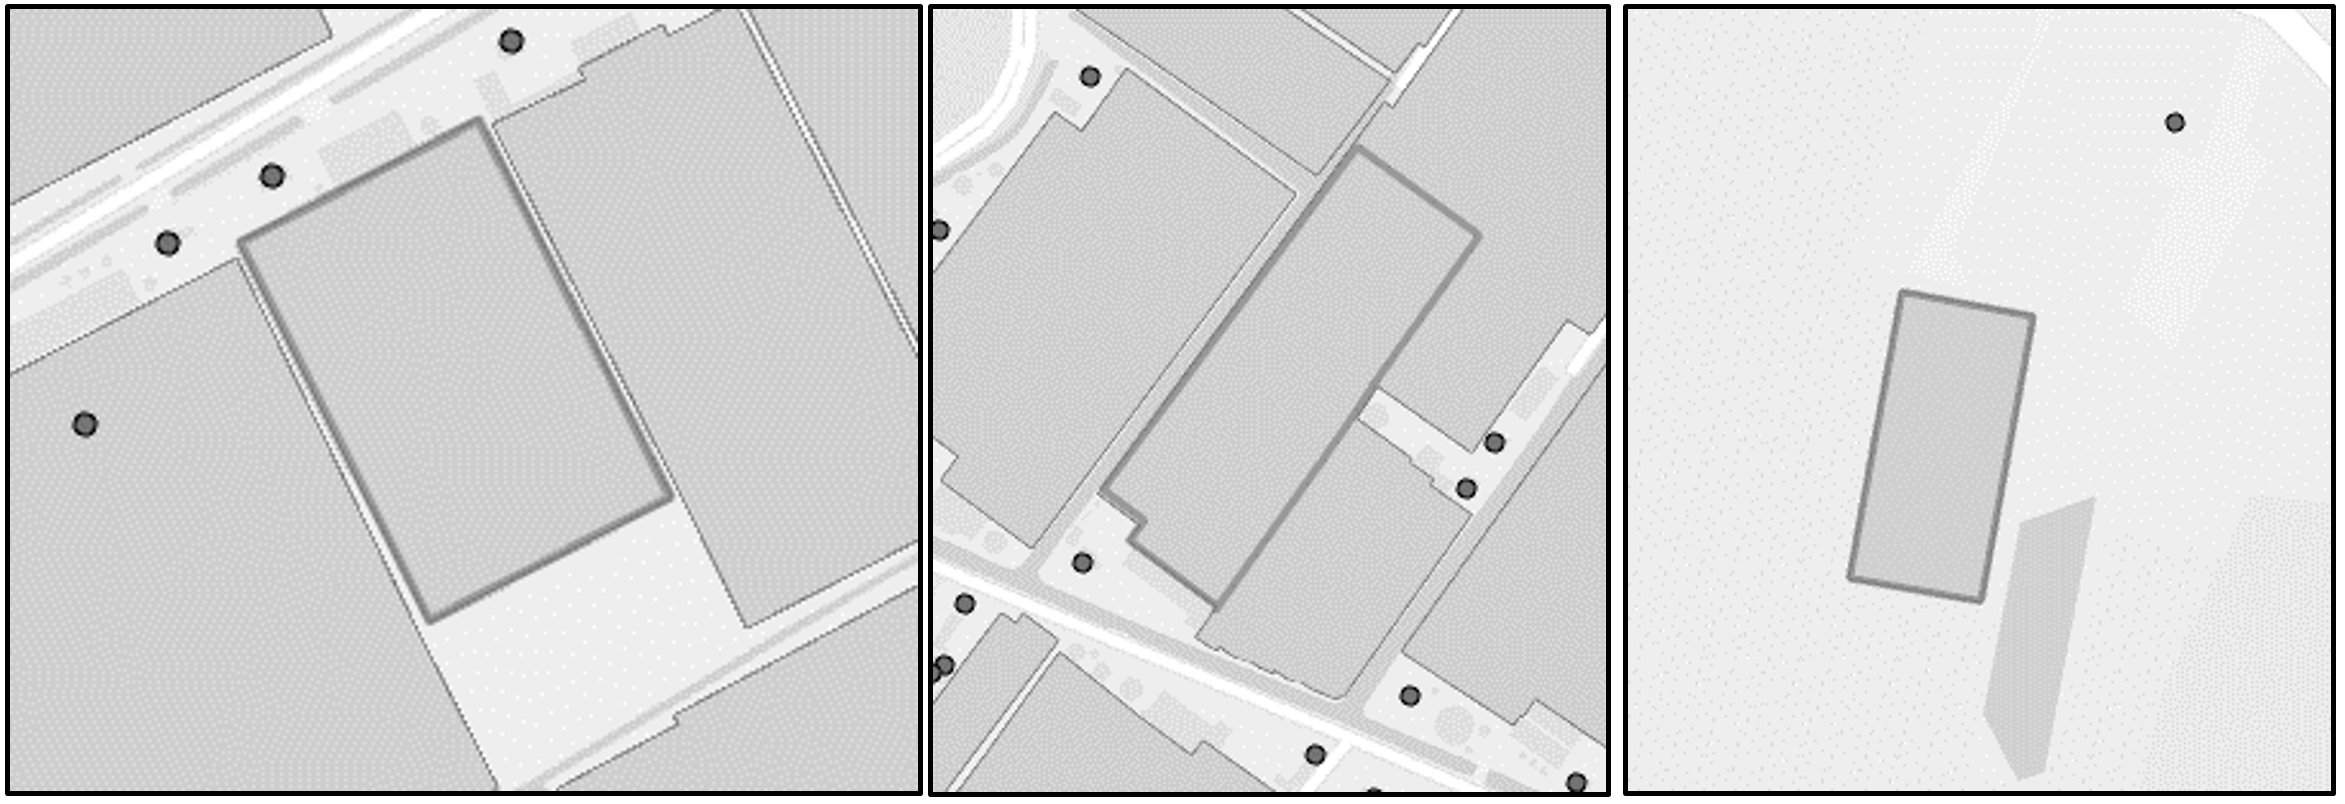 Deze figuur toont drie fragmenten van kaarten uit TOP10NL, met verblijfsobjecten binnen respectievelijk 20, 35 en 50 meter van een kas.